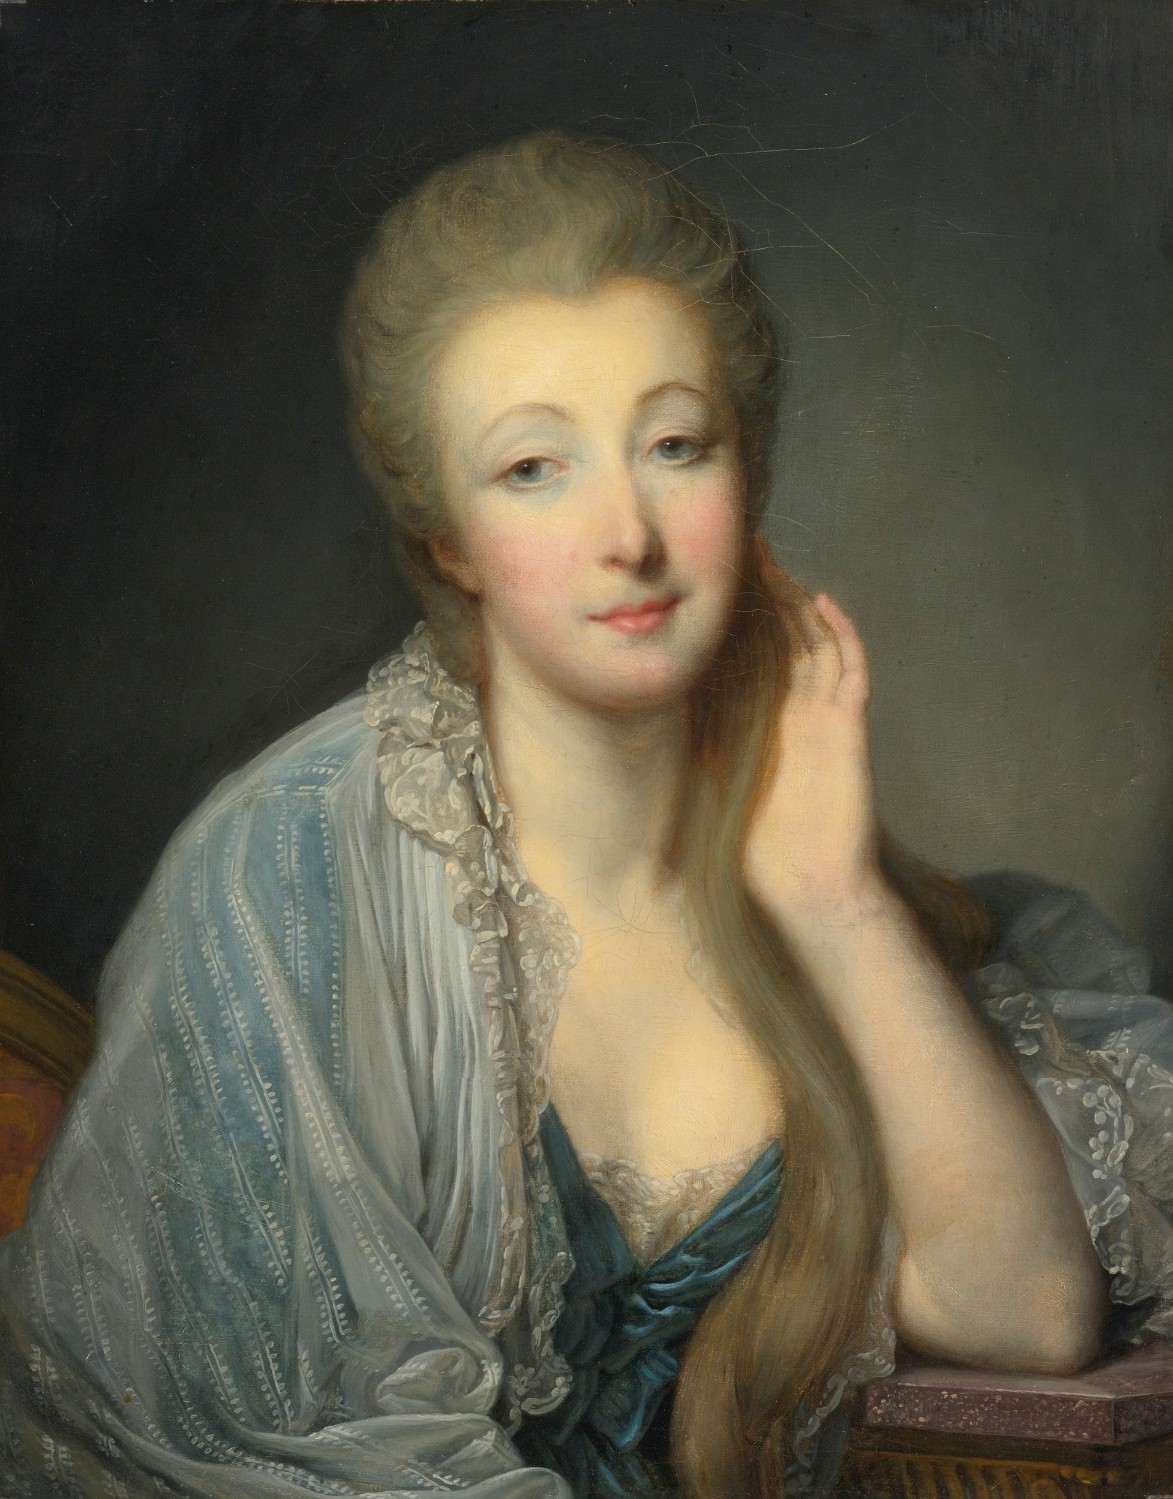 Comtesse du Barry (Portrait: Oil on canvan by Jean-Baptiste Greuze [1771?])